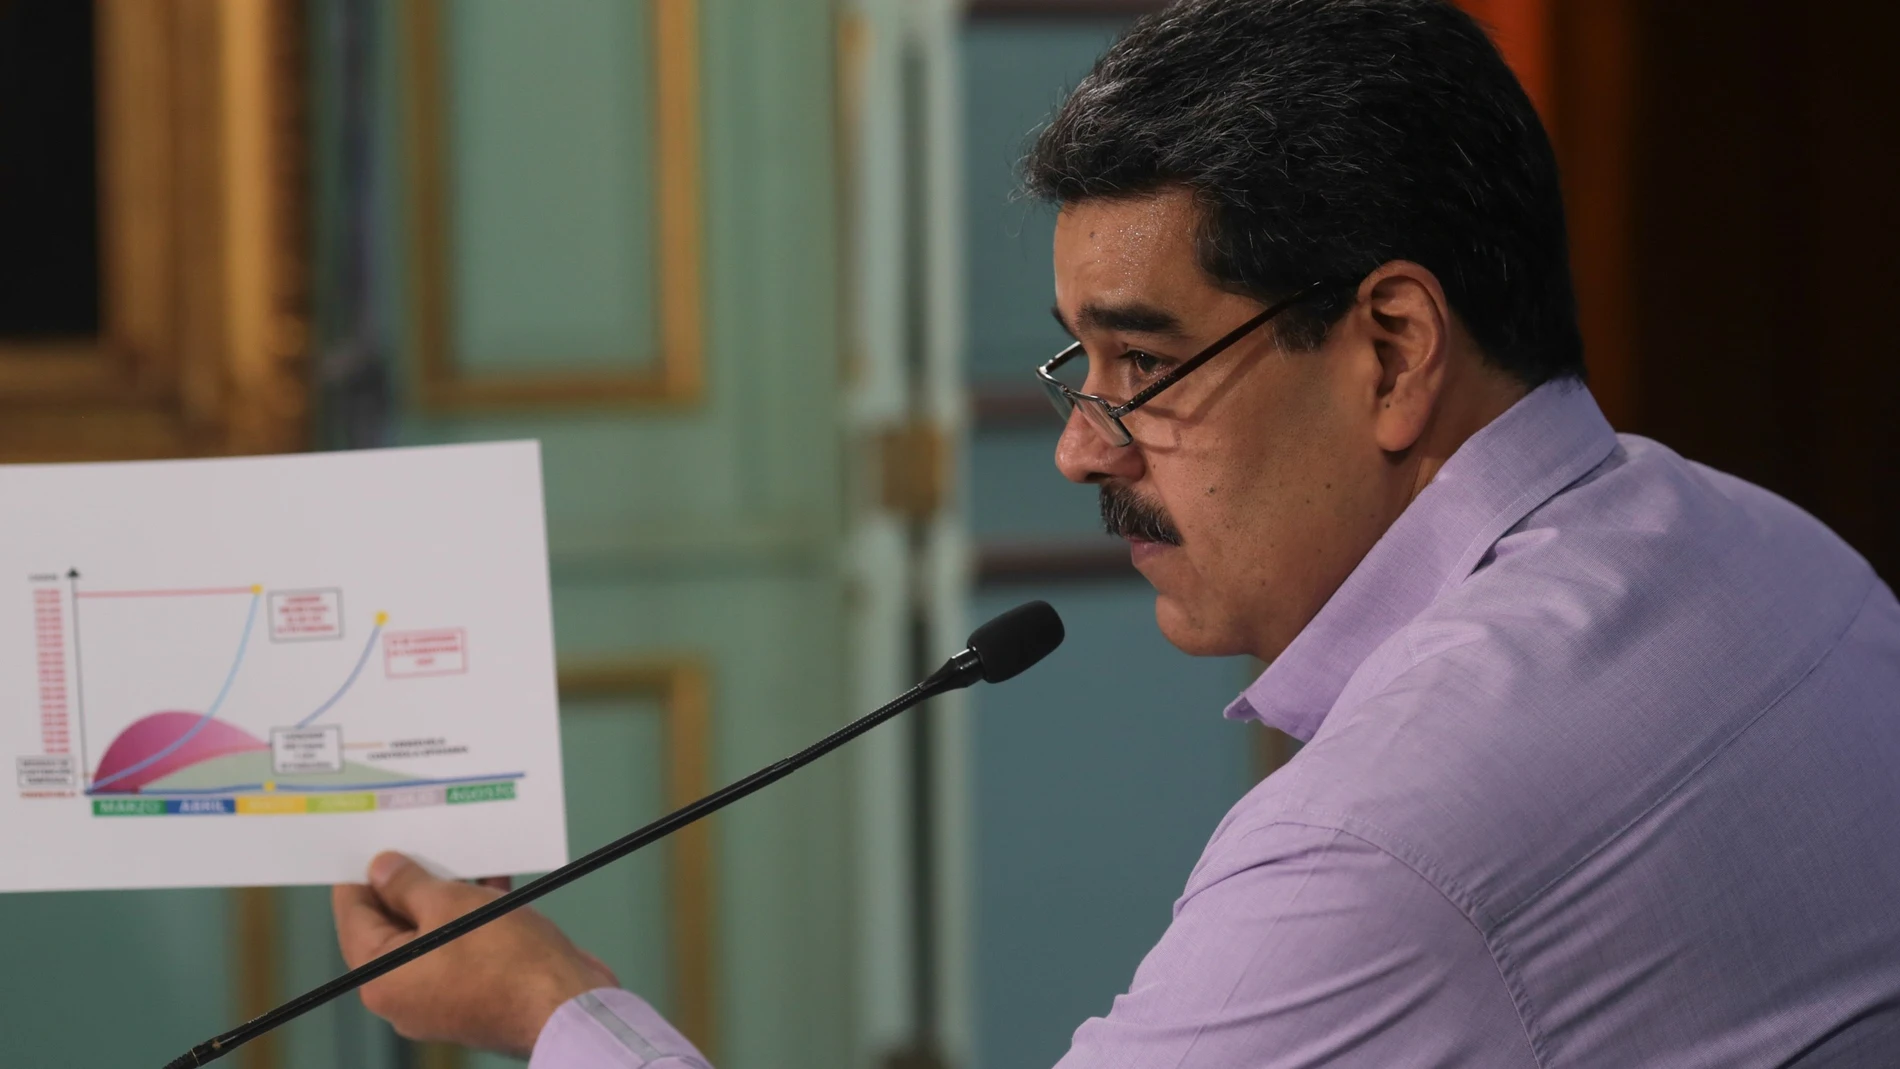 "Hay nuevos "grupos mercenarios" que han sido conformados en Colombia": Maduro